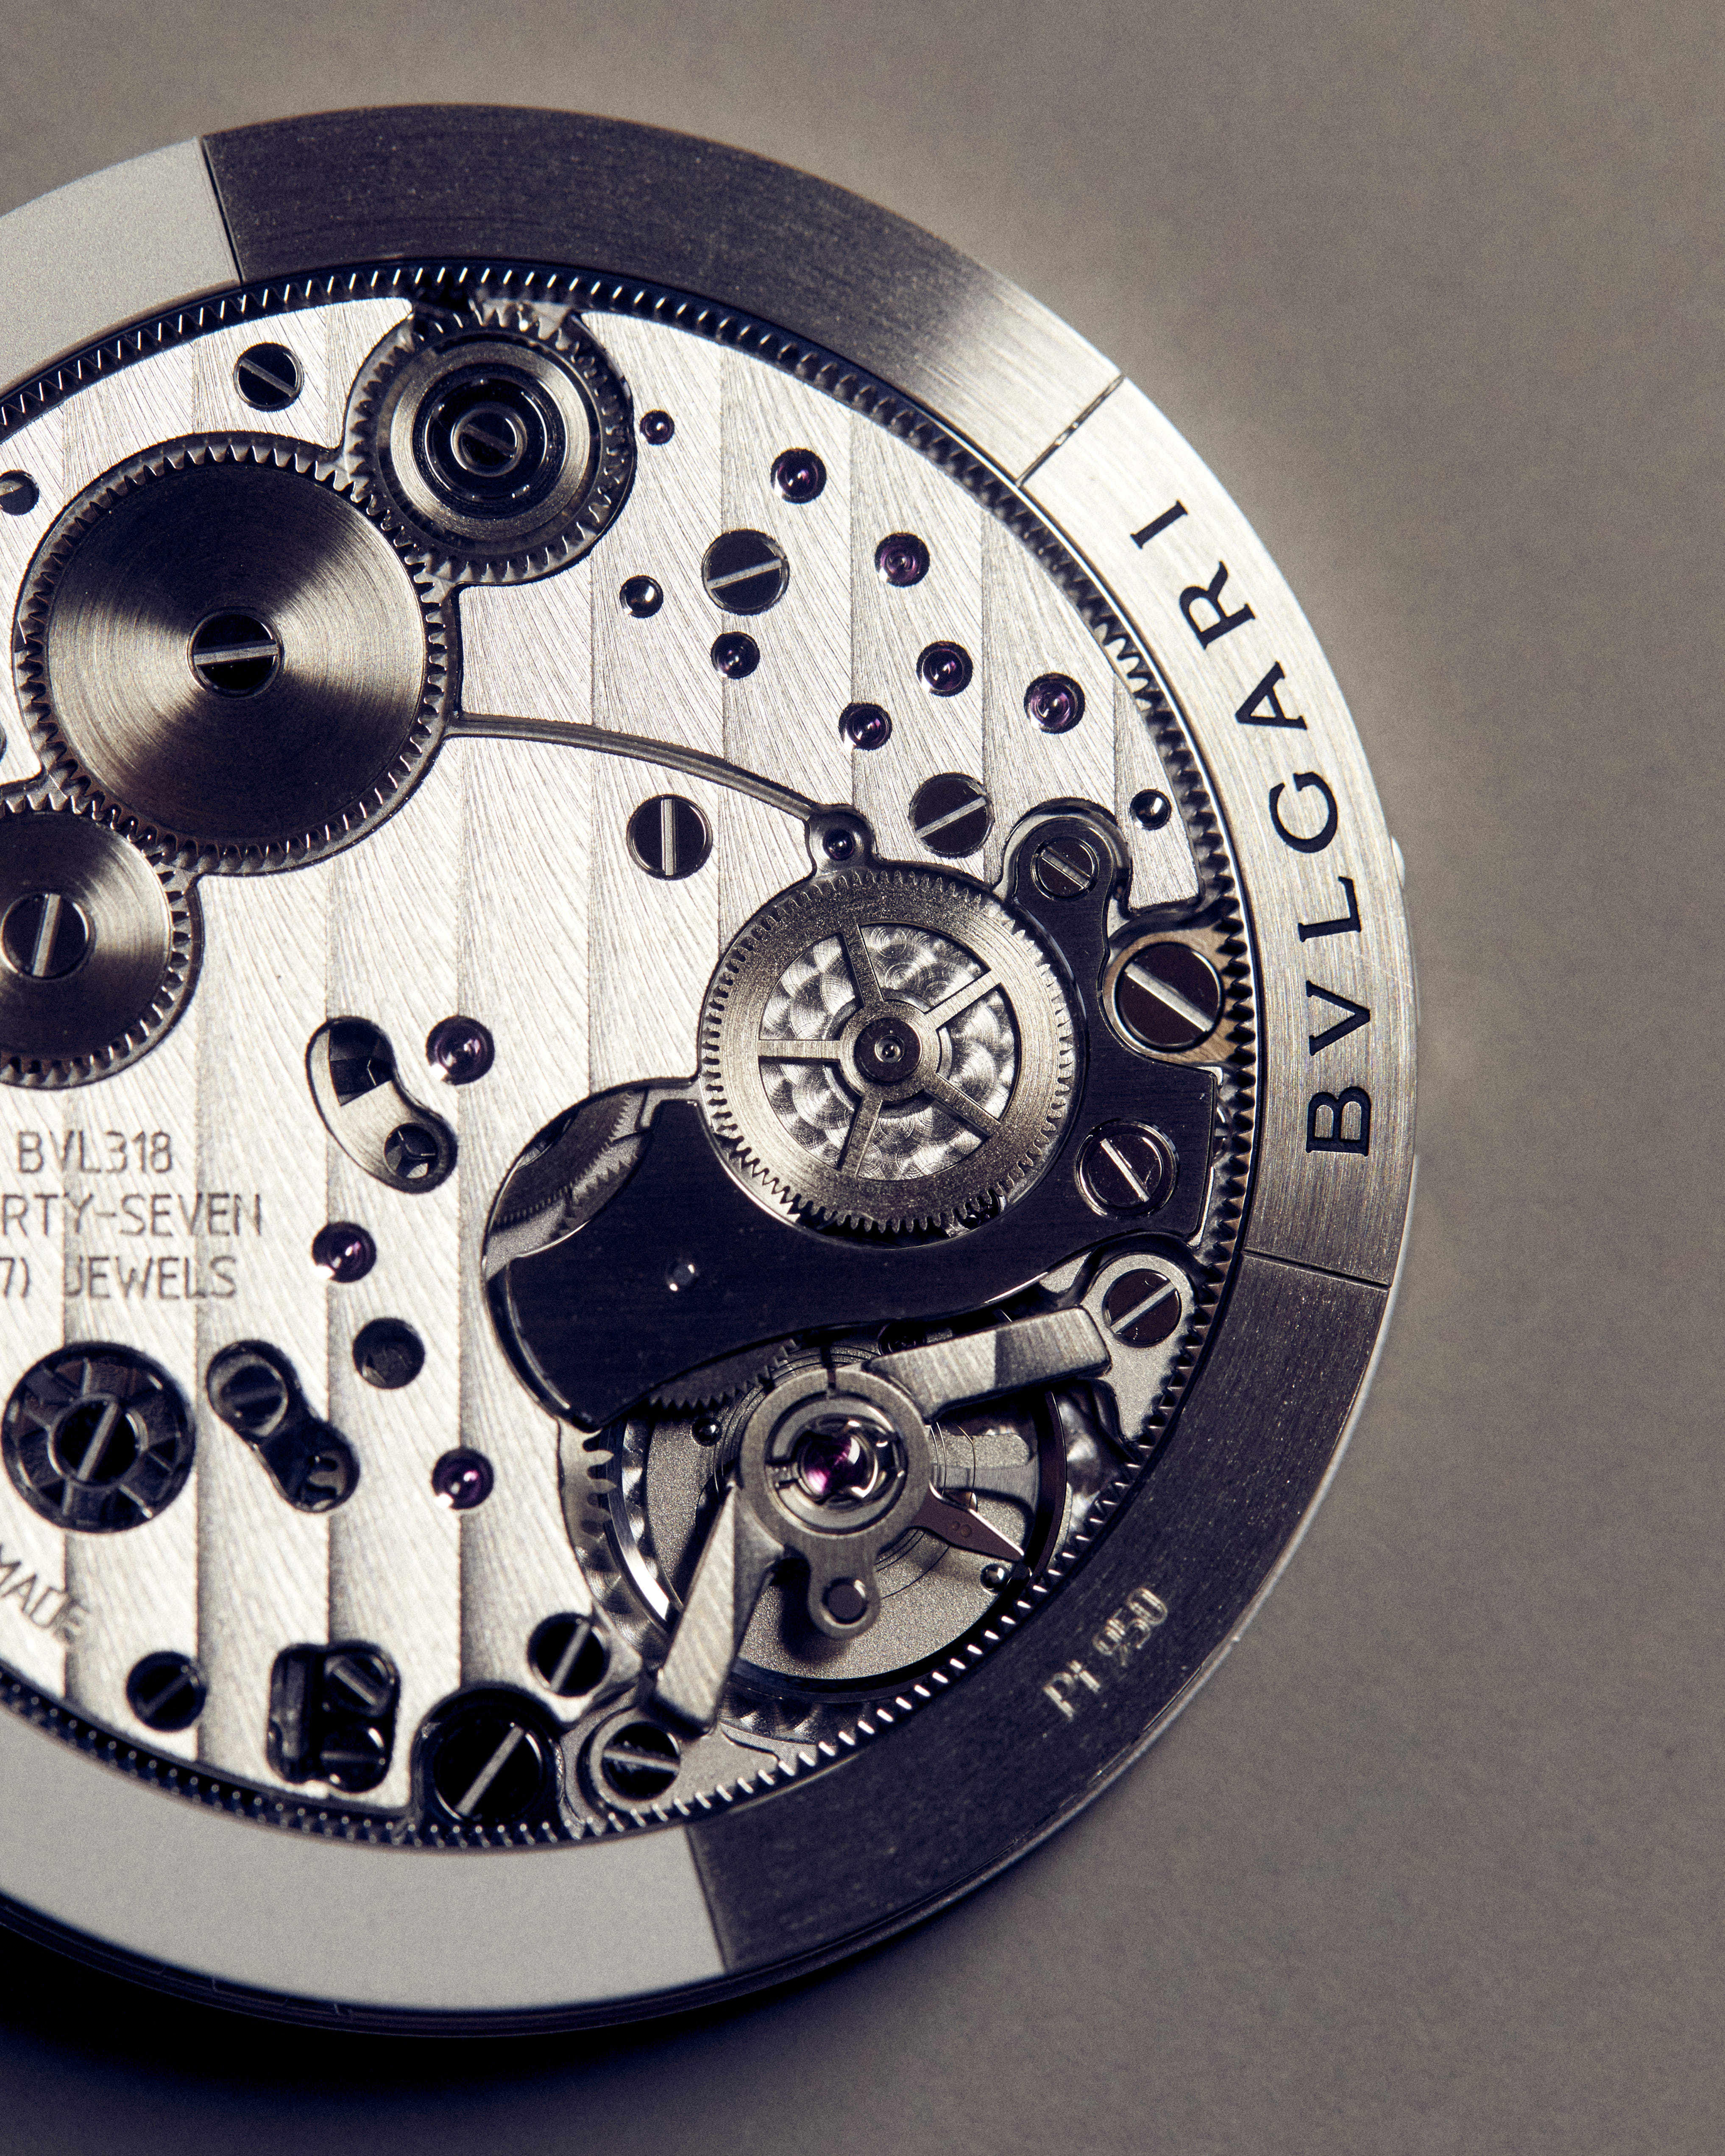 寶格麗鐘錶品牌書 Beyond Time_義大利設計與瑞士工藝章節_寶格麗製錶工藝 (4)